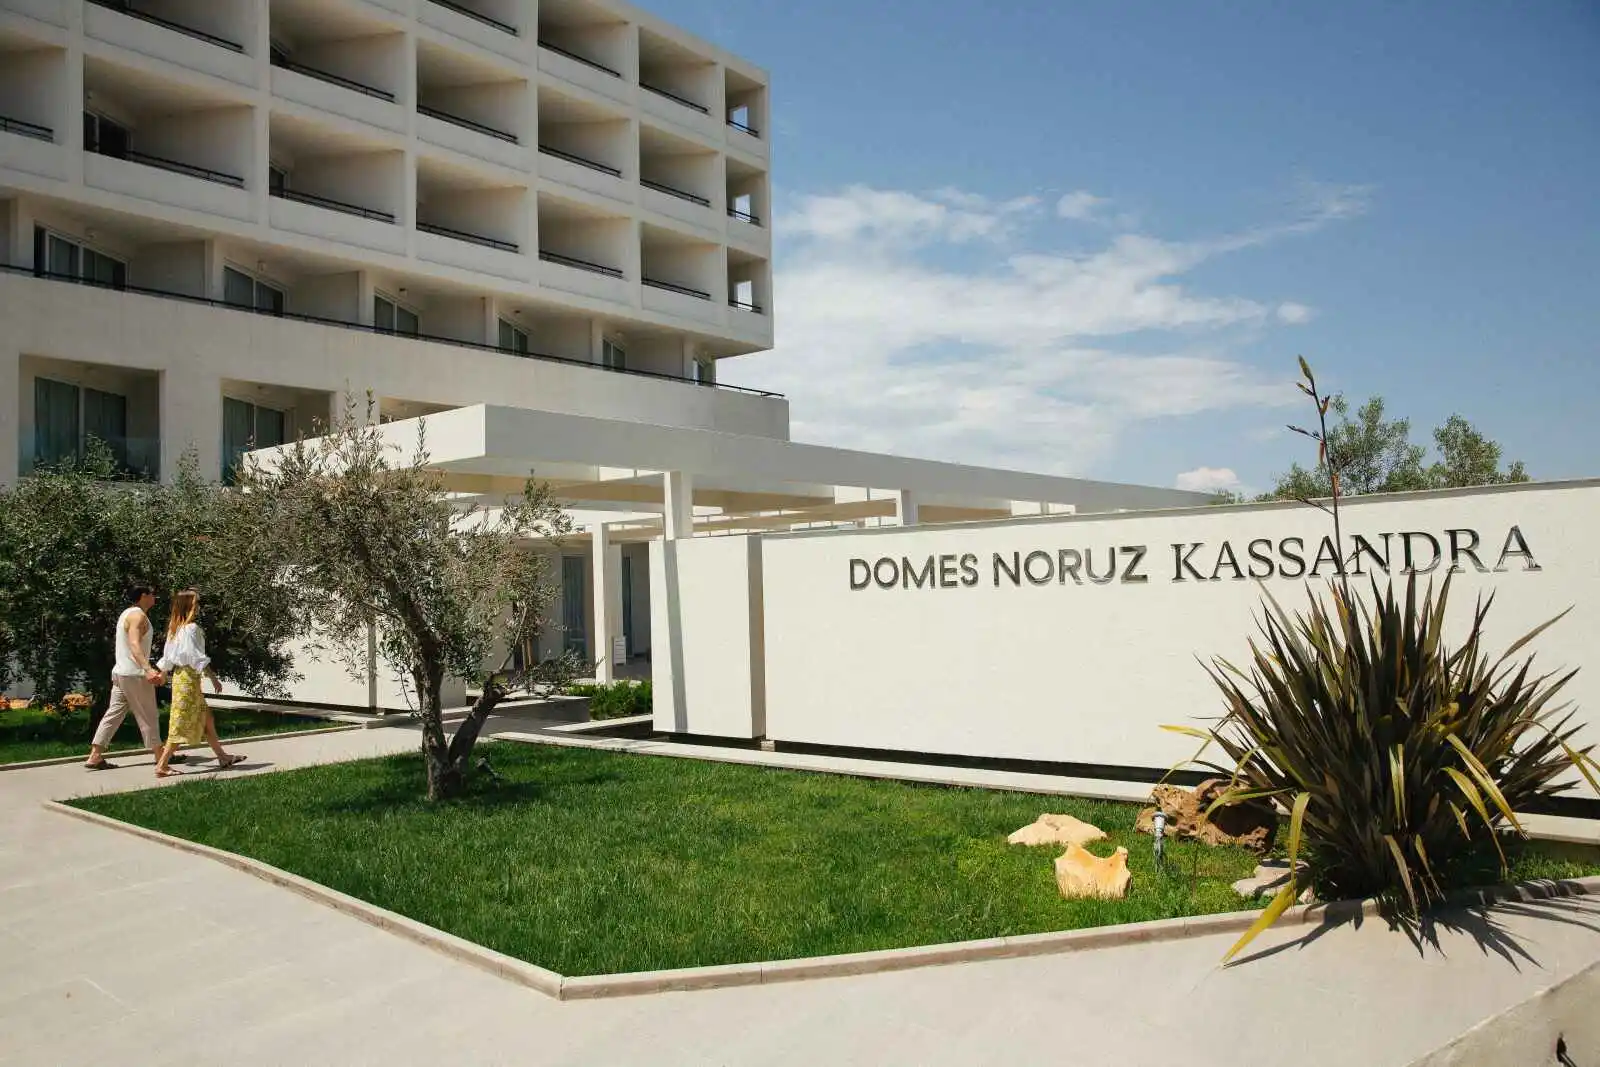 Grèce - Grèce continentale - Thessalonique et sa région - Hôtel Domes Noruz Kassandra 5*